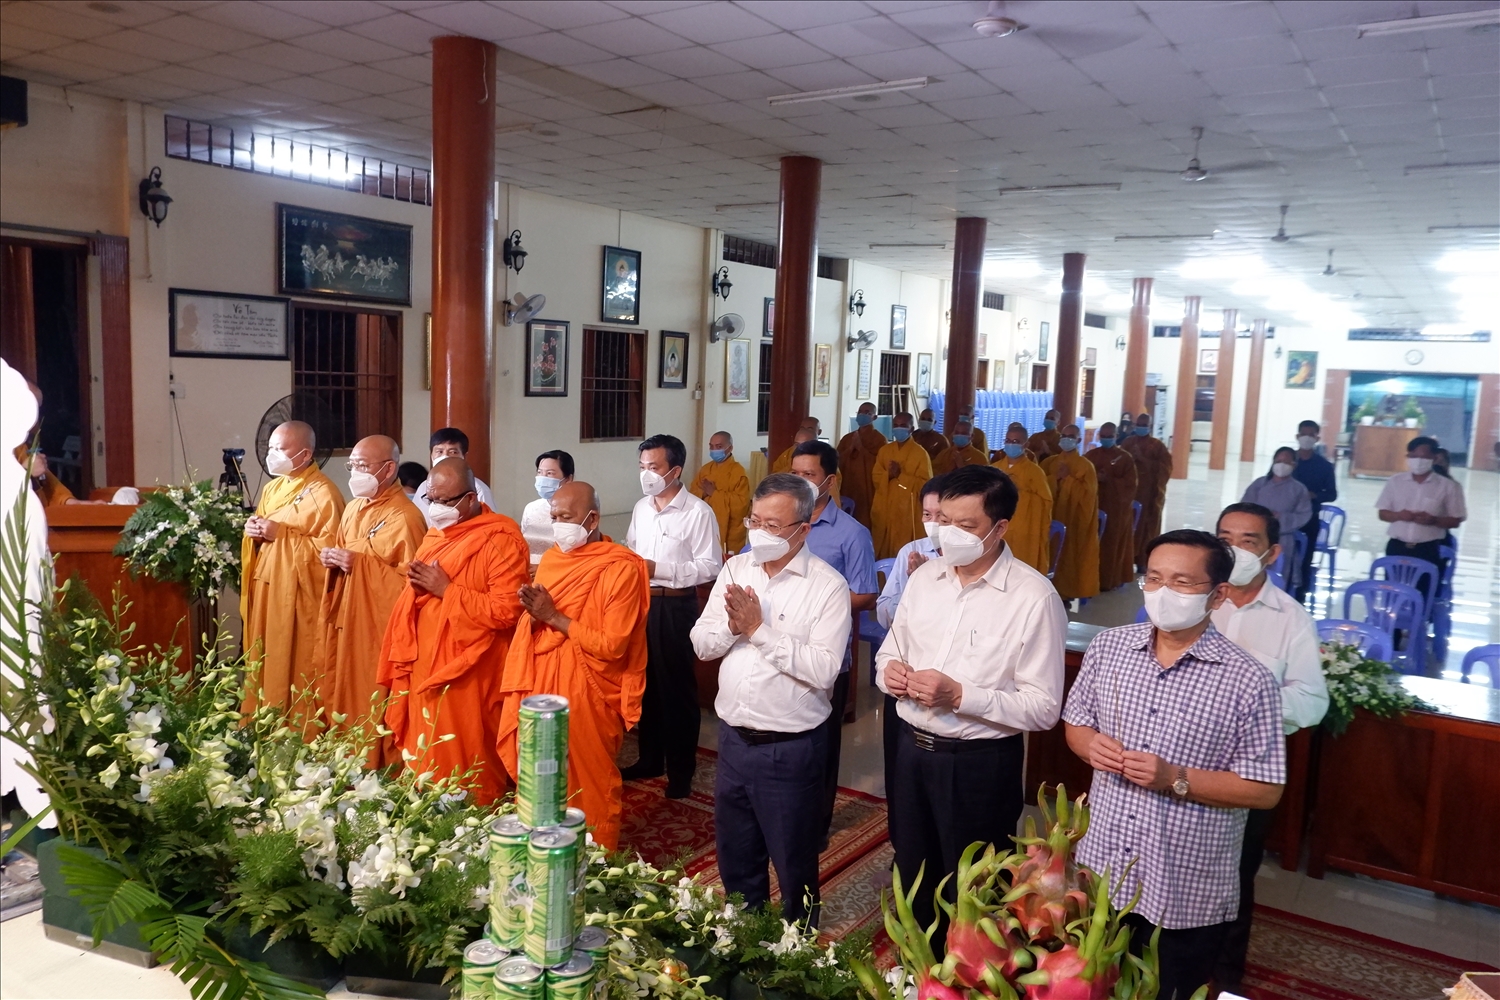 Nghi lễ tưởng niệm các nạn nhân Covid-19 diễn ra tại Thiền viên Trúc lâm phương Nam (Cần Thơ)